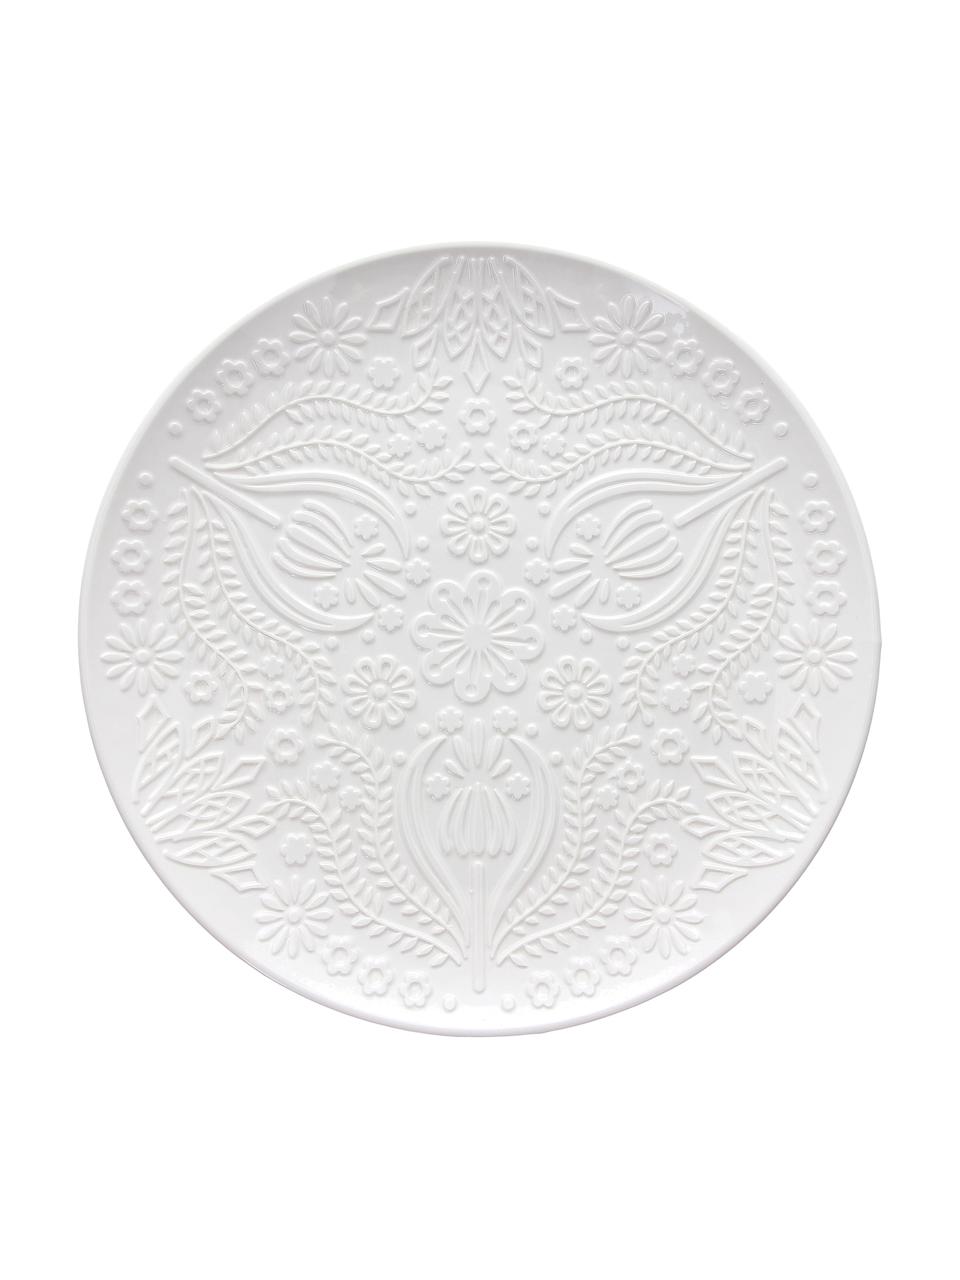 Platos llanos de porcenala Ornament, 2 uds., Porcelana, Blanco, Ø 30 cm